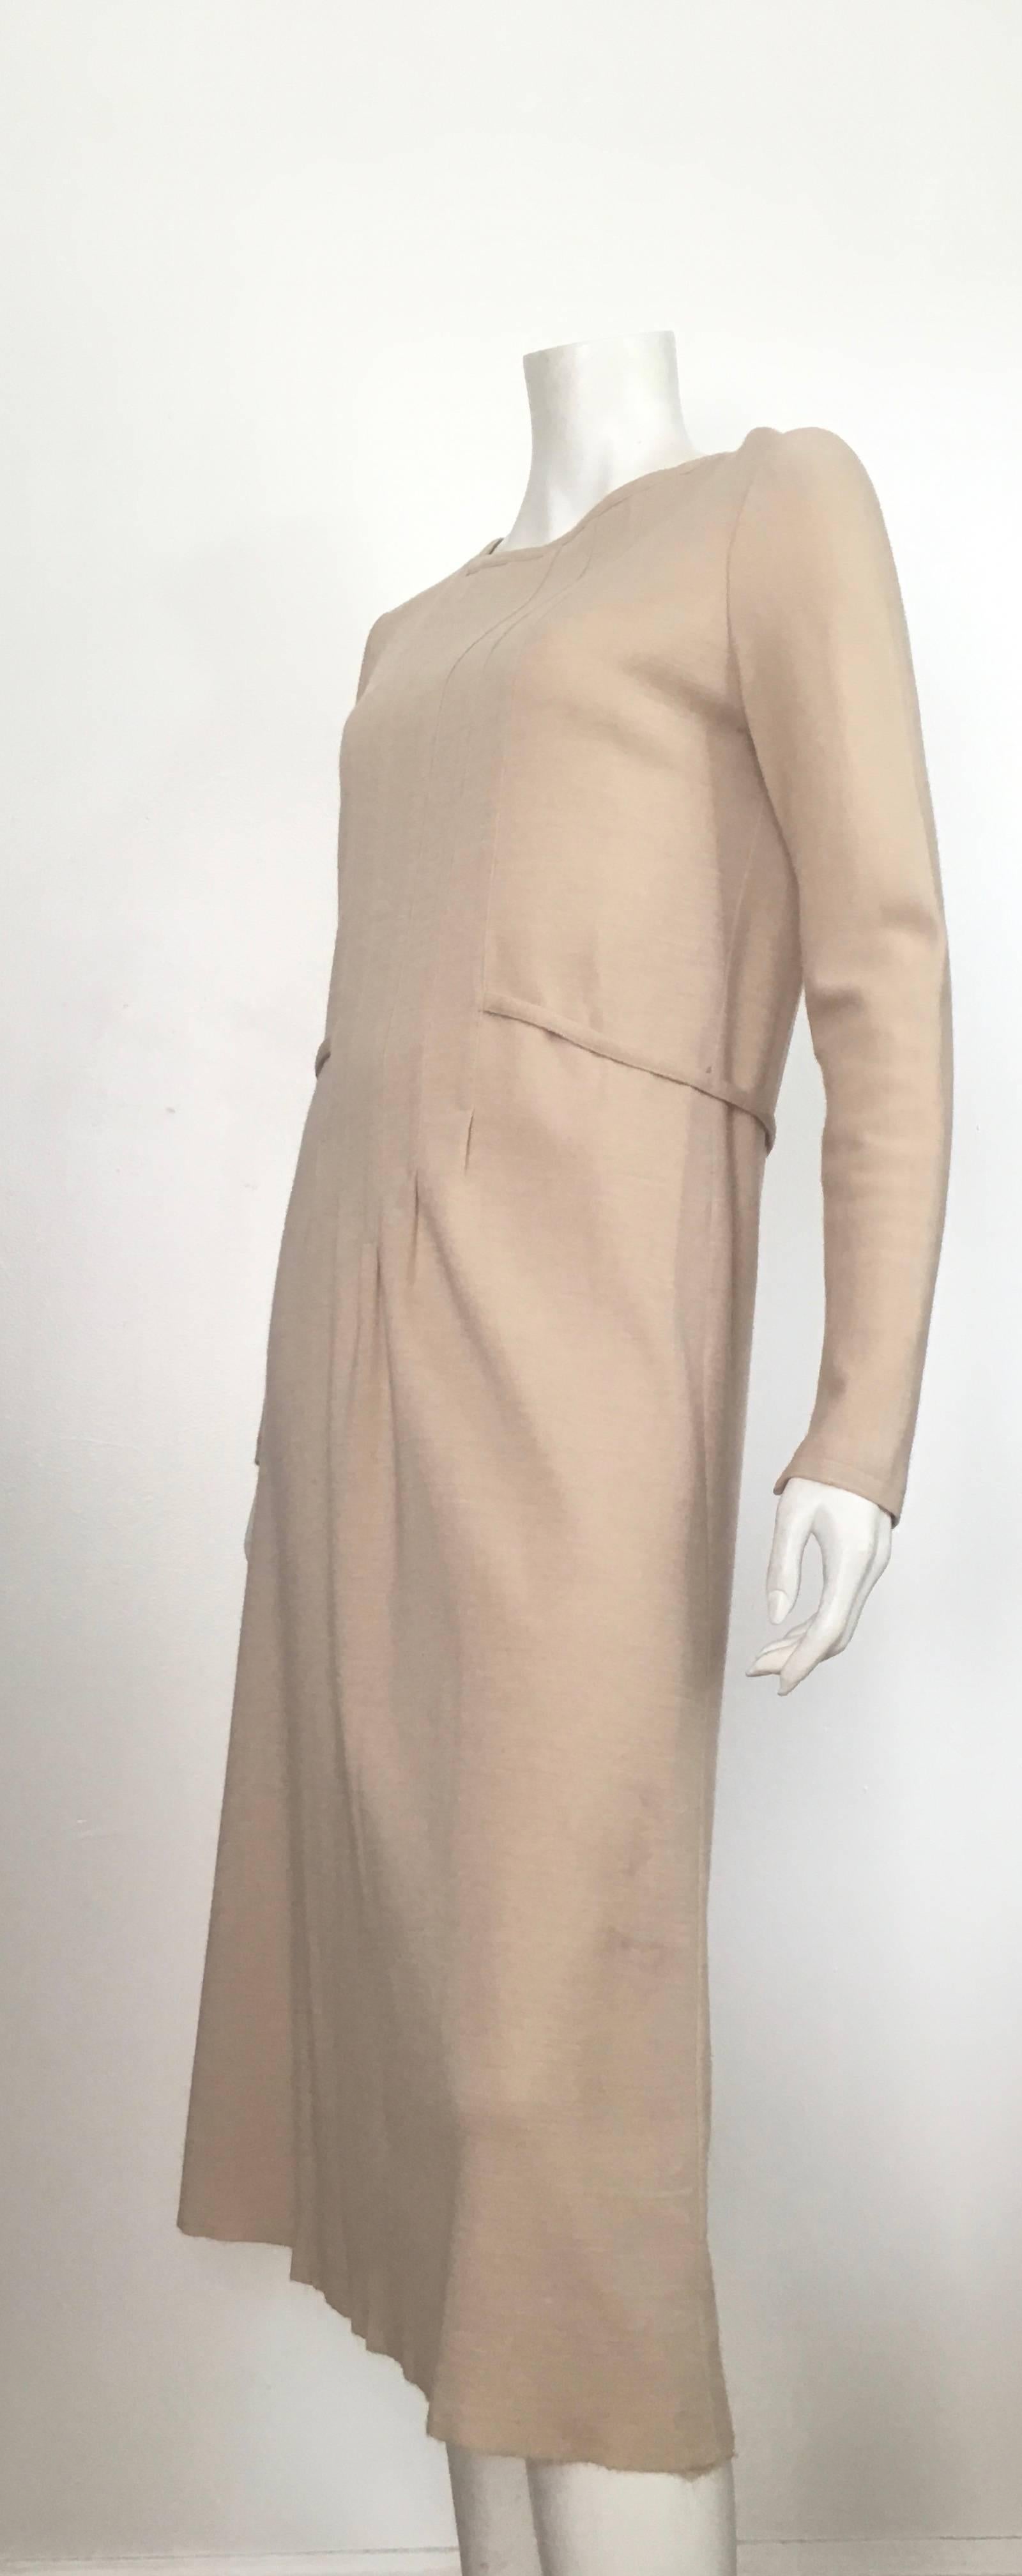 Geoffrey Beene Boutique 1970s Wool Knit Tan Long Sleeve Dress Size 8. For Sale 8